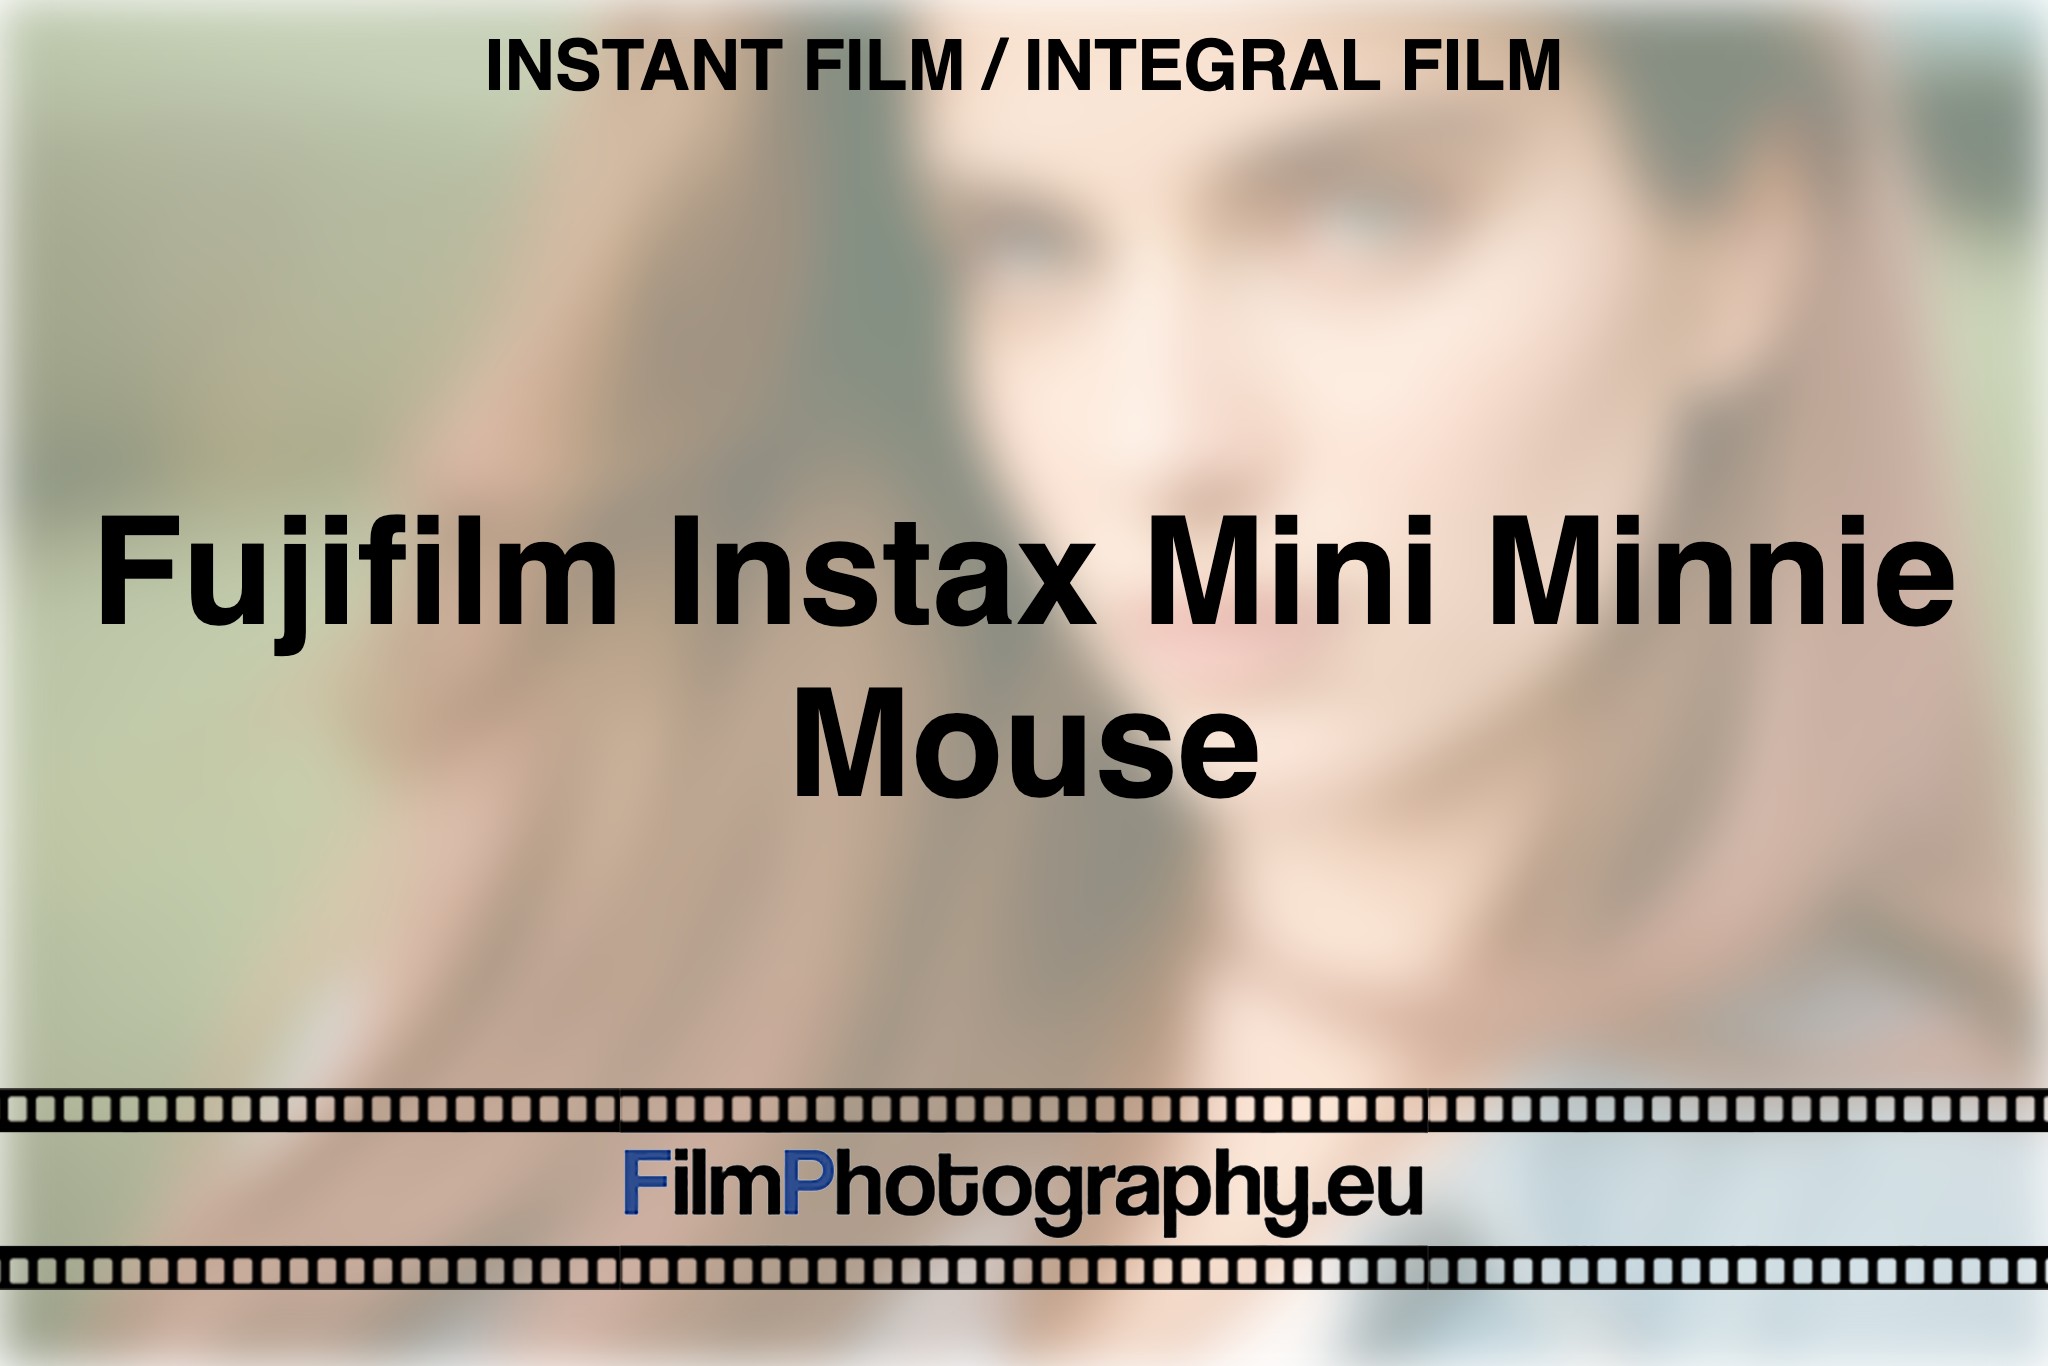 fujifilm-instax-mini-minnie-mouse-instant-film-integral-film-bnv